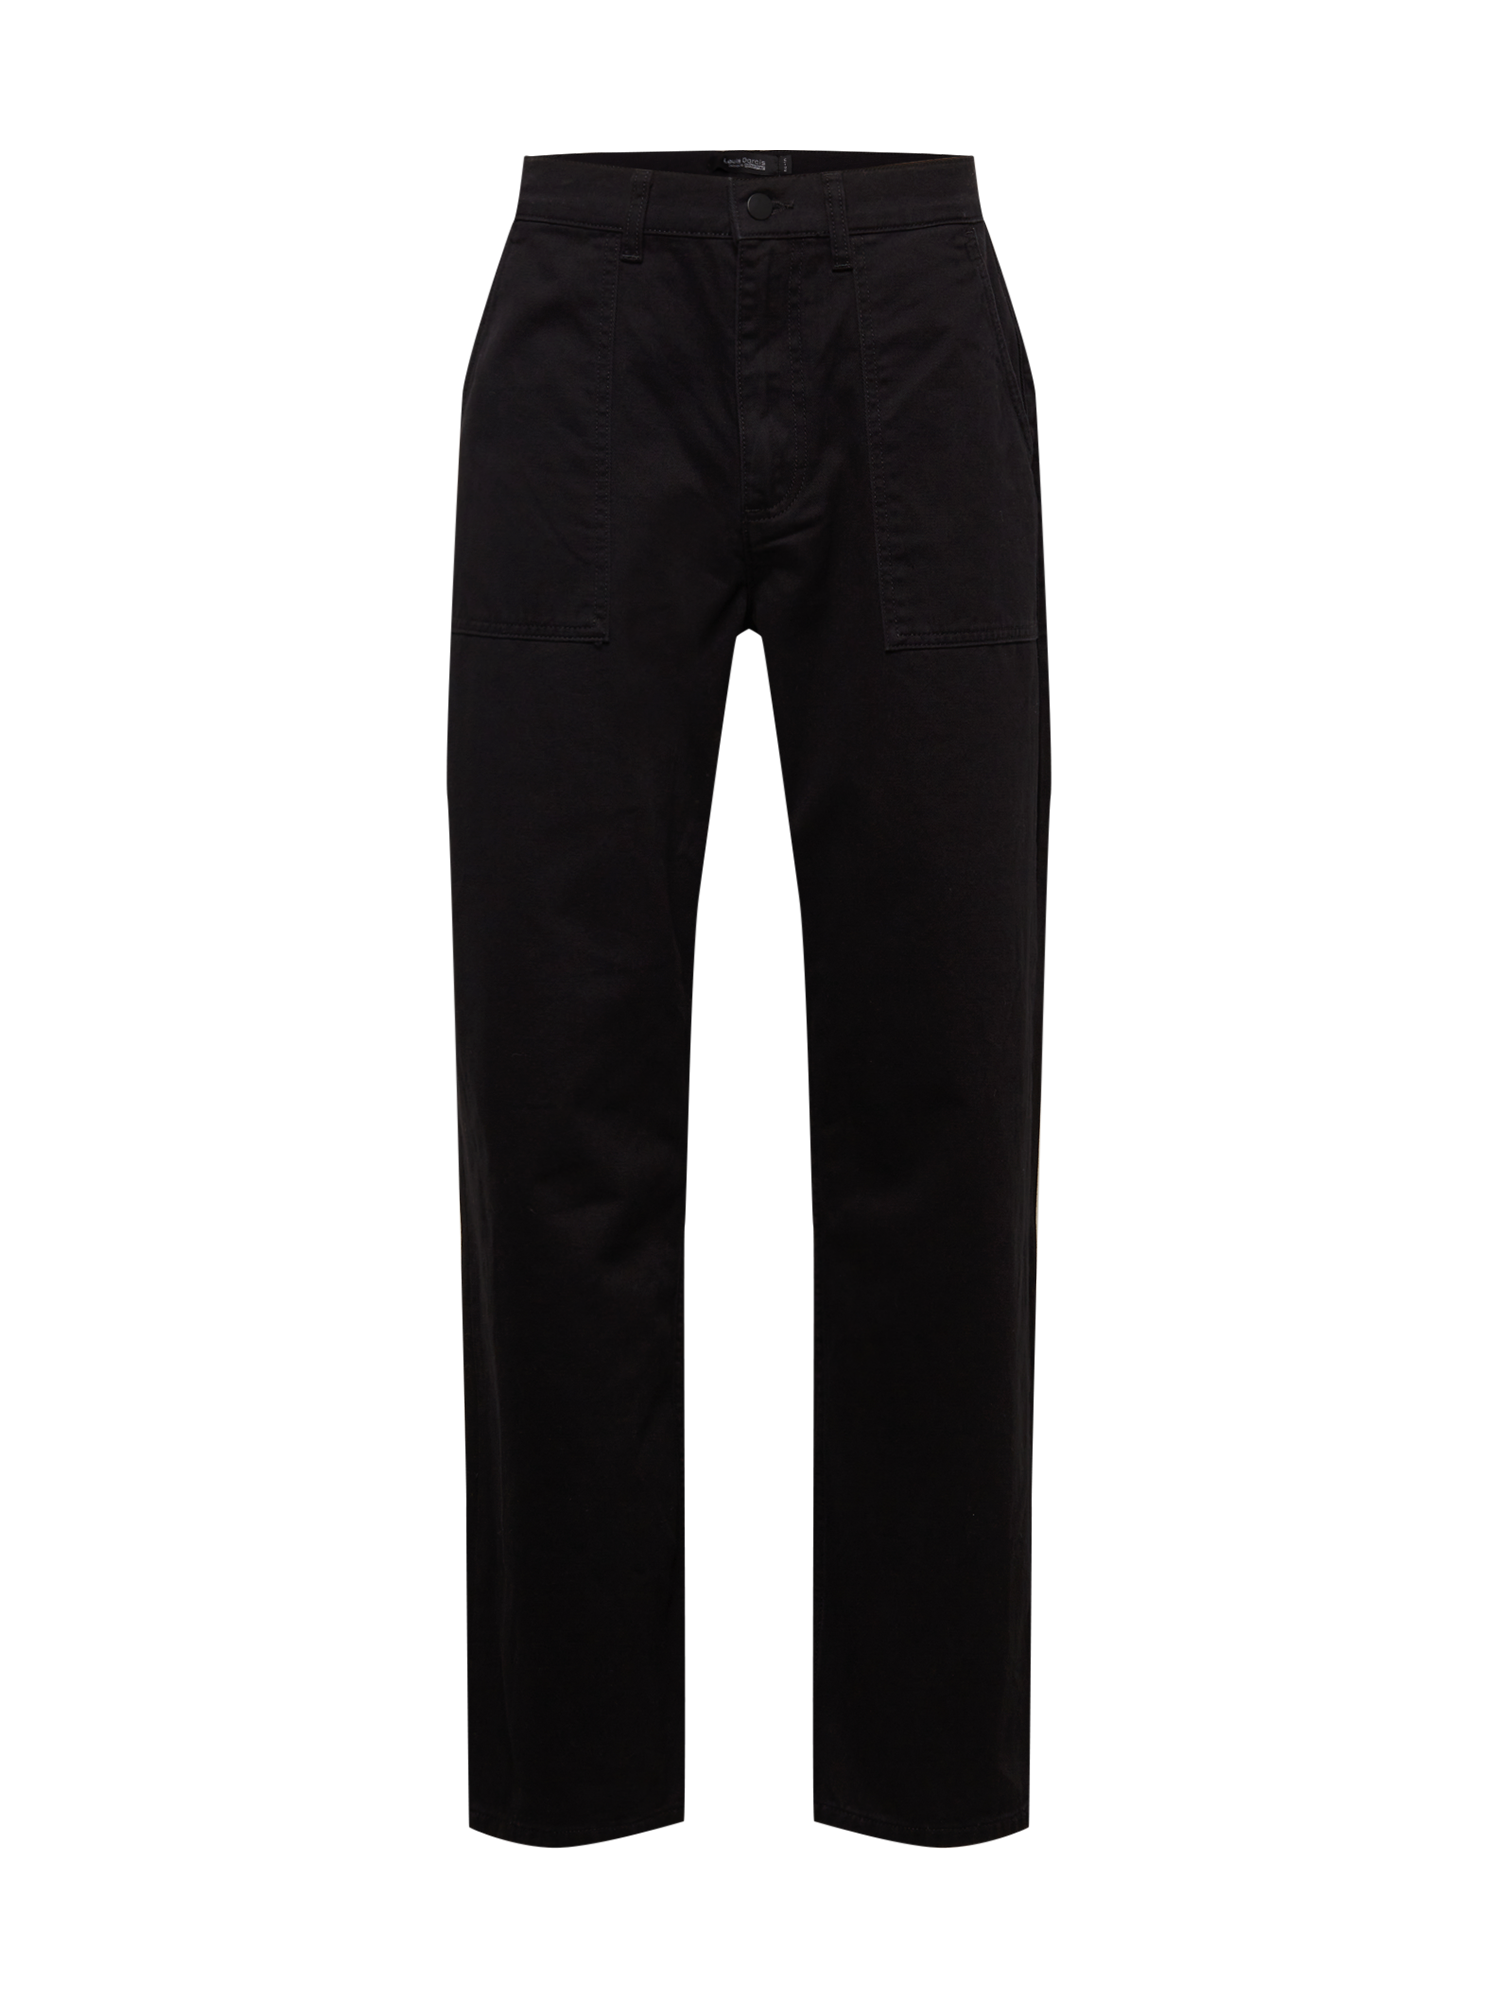 Odzież Ekskluzywne  x Louis Darcis Spodnie w kolorze Czarnym 